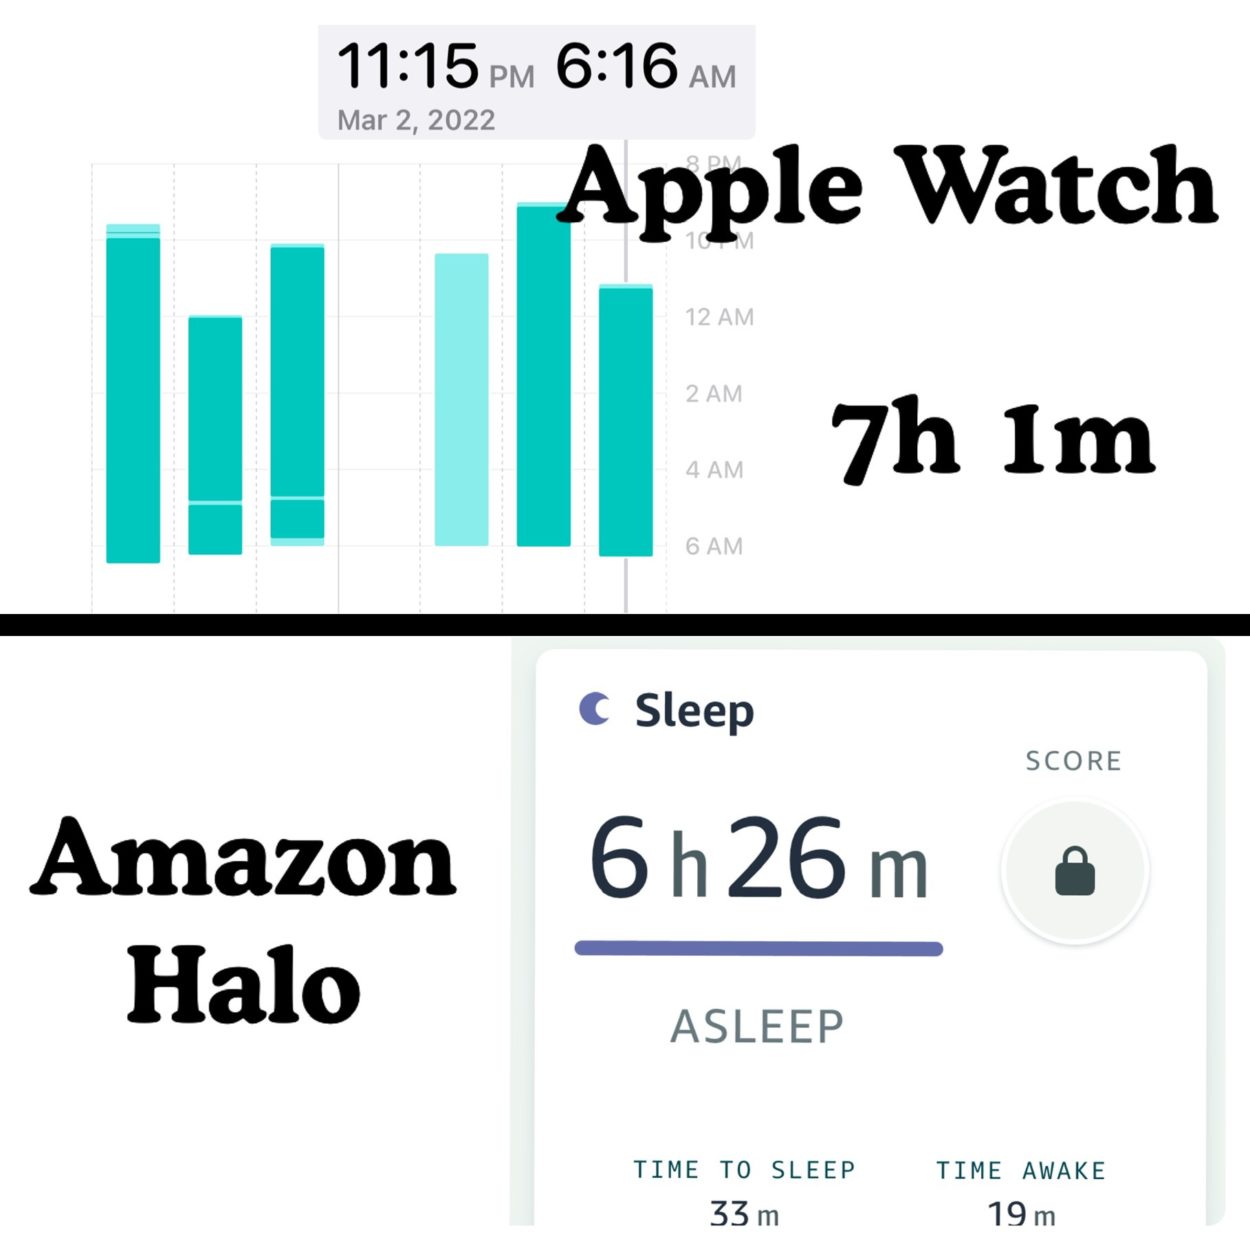 apple watch vs amazon halo for sleep tracking